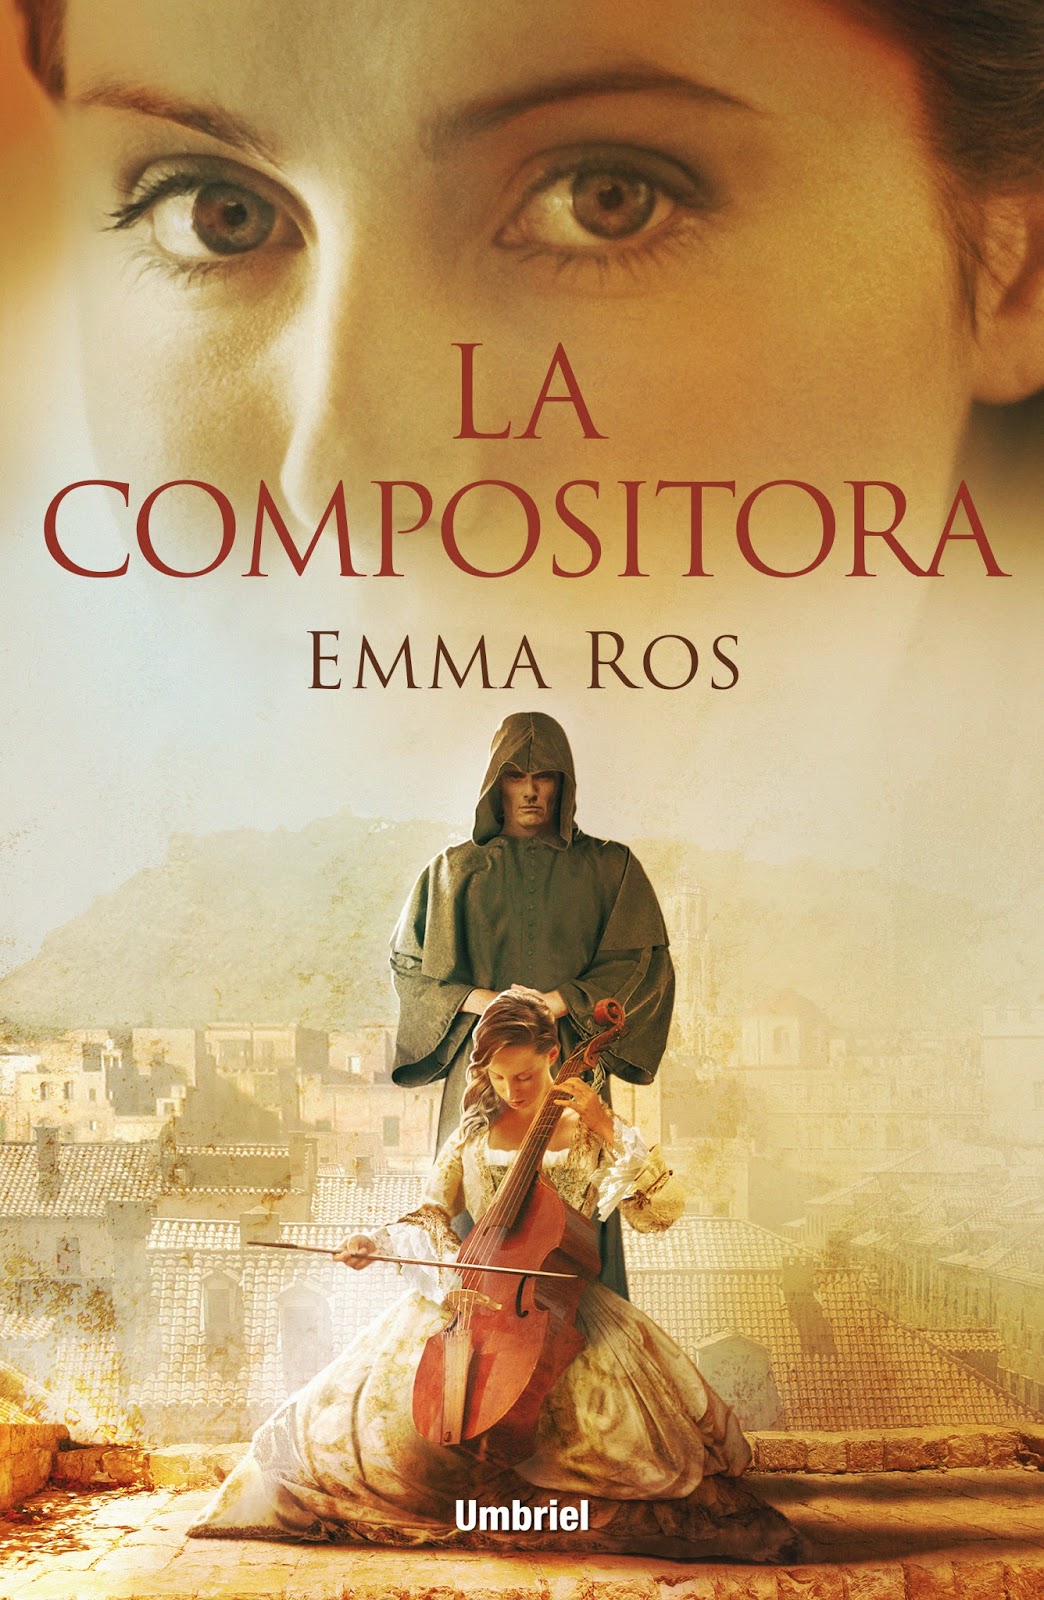 La compositora - Emma Ros (2014)